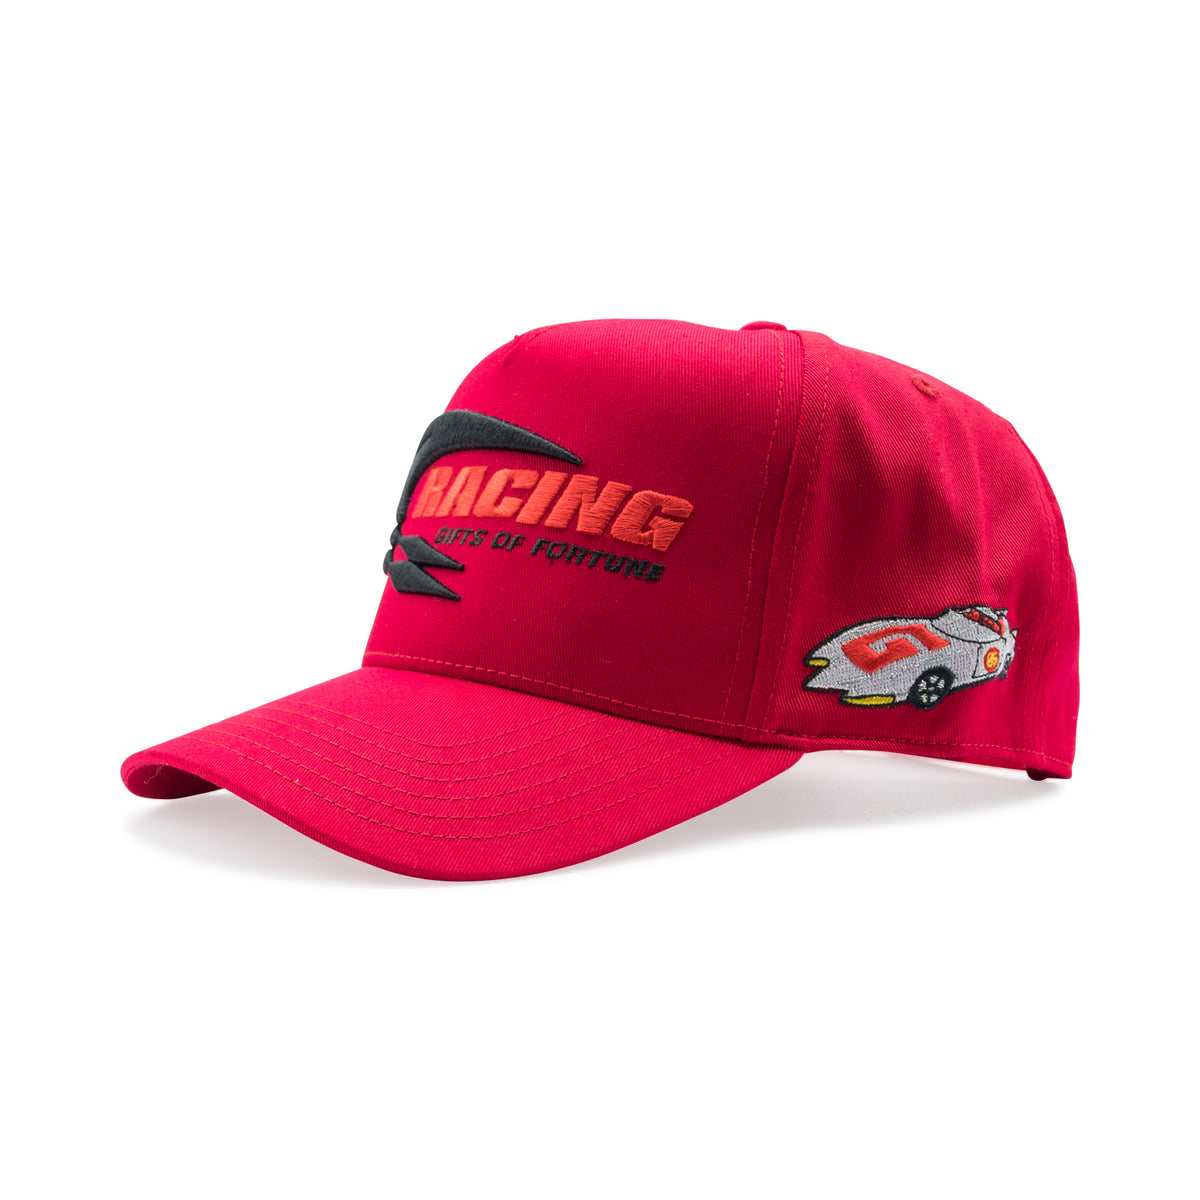 1 of 1 Speedway Trucker Hat| Red